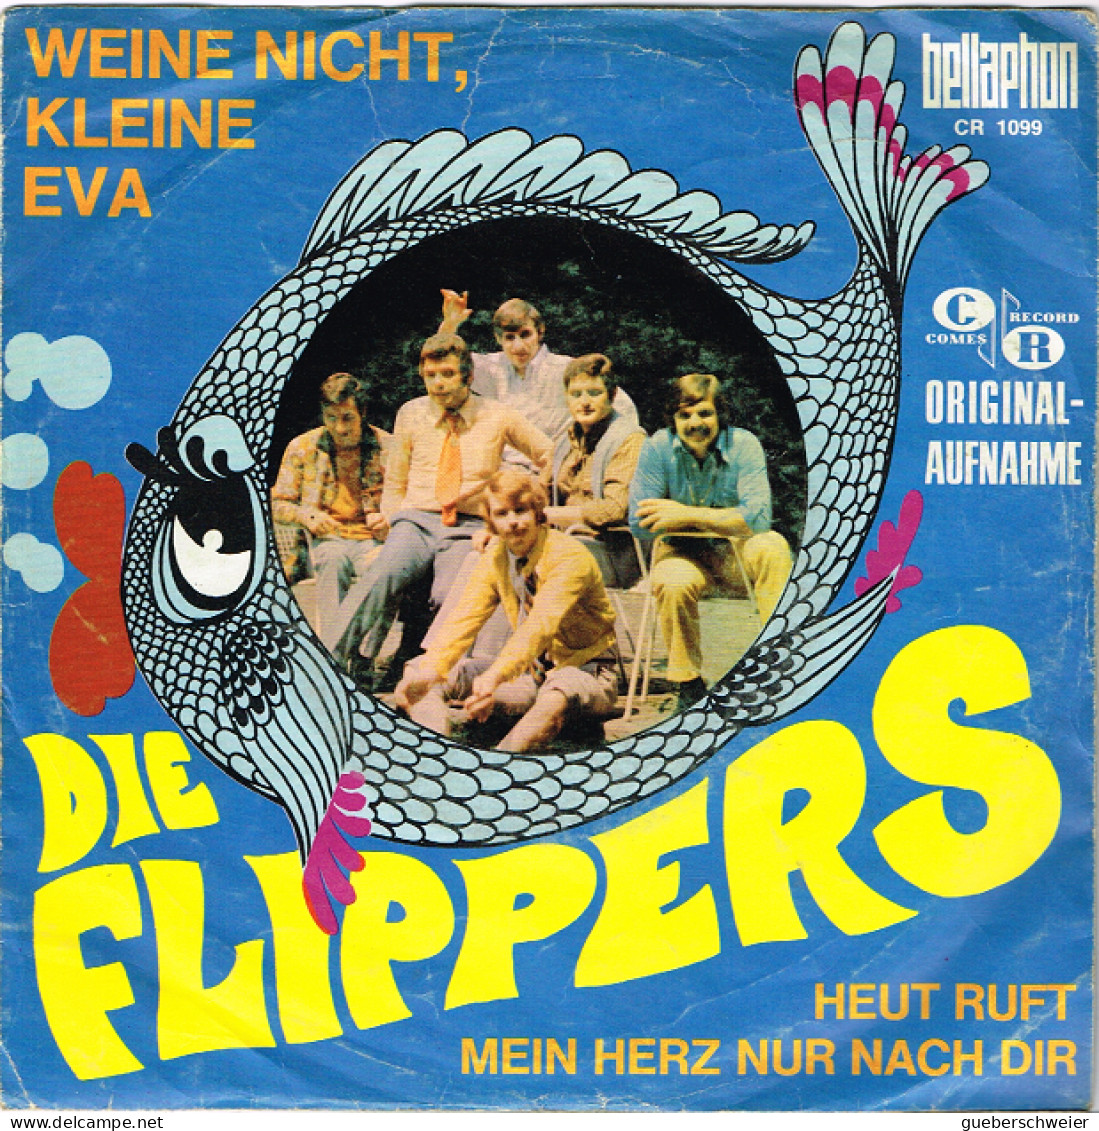 DIE FLIPPERS 45 Tours EP - Weine Nicht Kleine Eva - Heute Ruft Mein Herz Nur Nach Dich - Autres - Musique Allemande